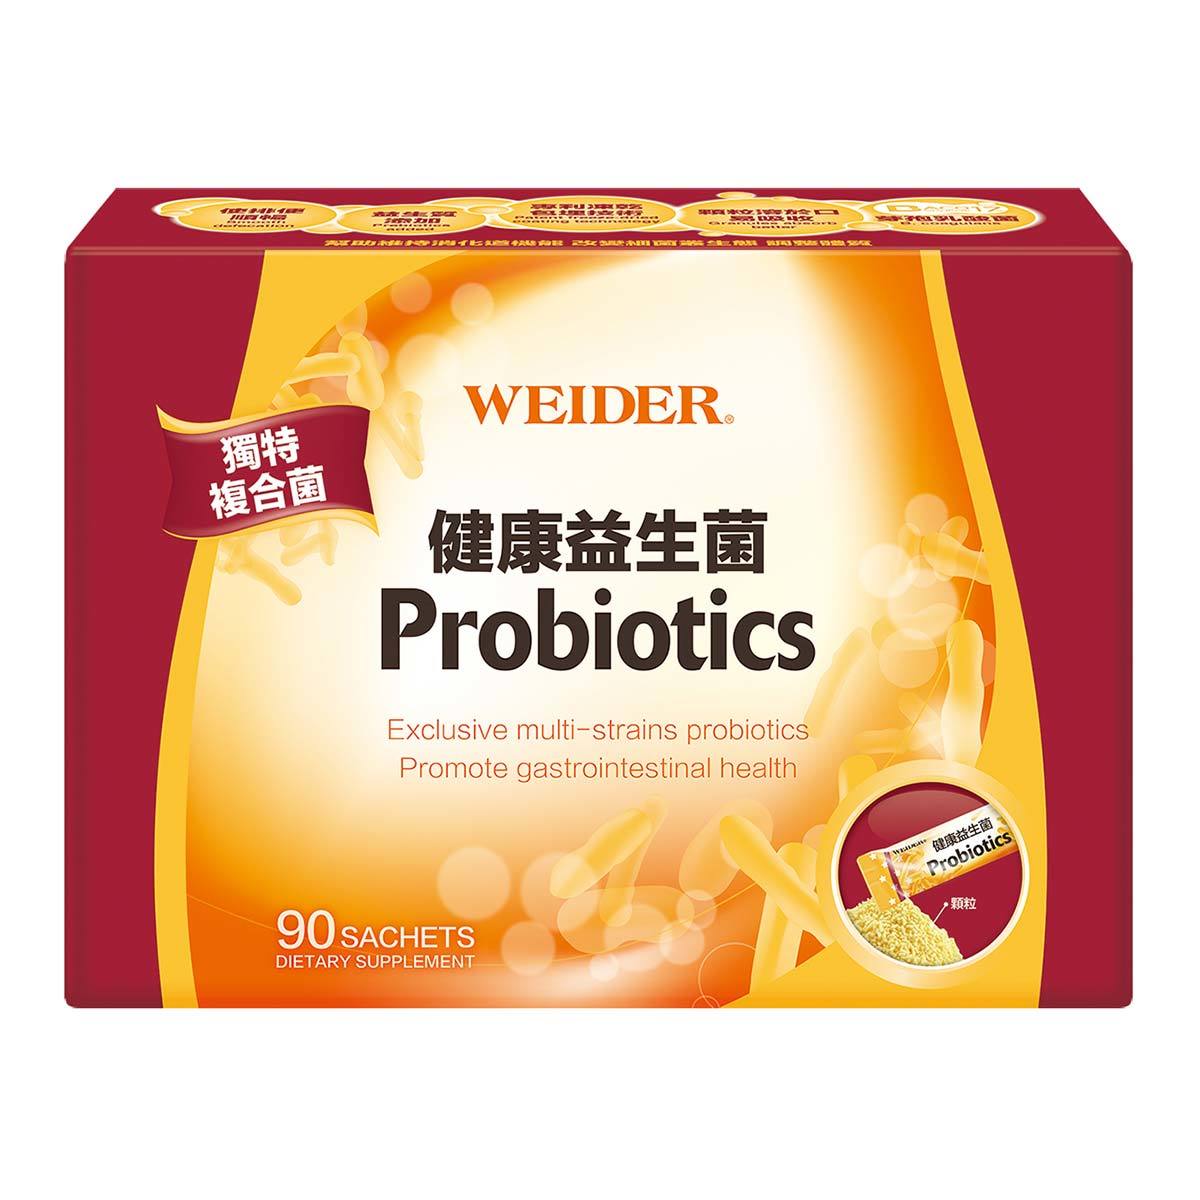 威德WEIDER PROBIOTICS健康益生菌(3公克 X 90包) 益生菌 防疫 口罩 生技食品 保健食品 乳酸食品 藥局 腸胃 養樂多 (HS嚴選)